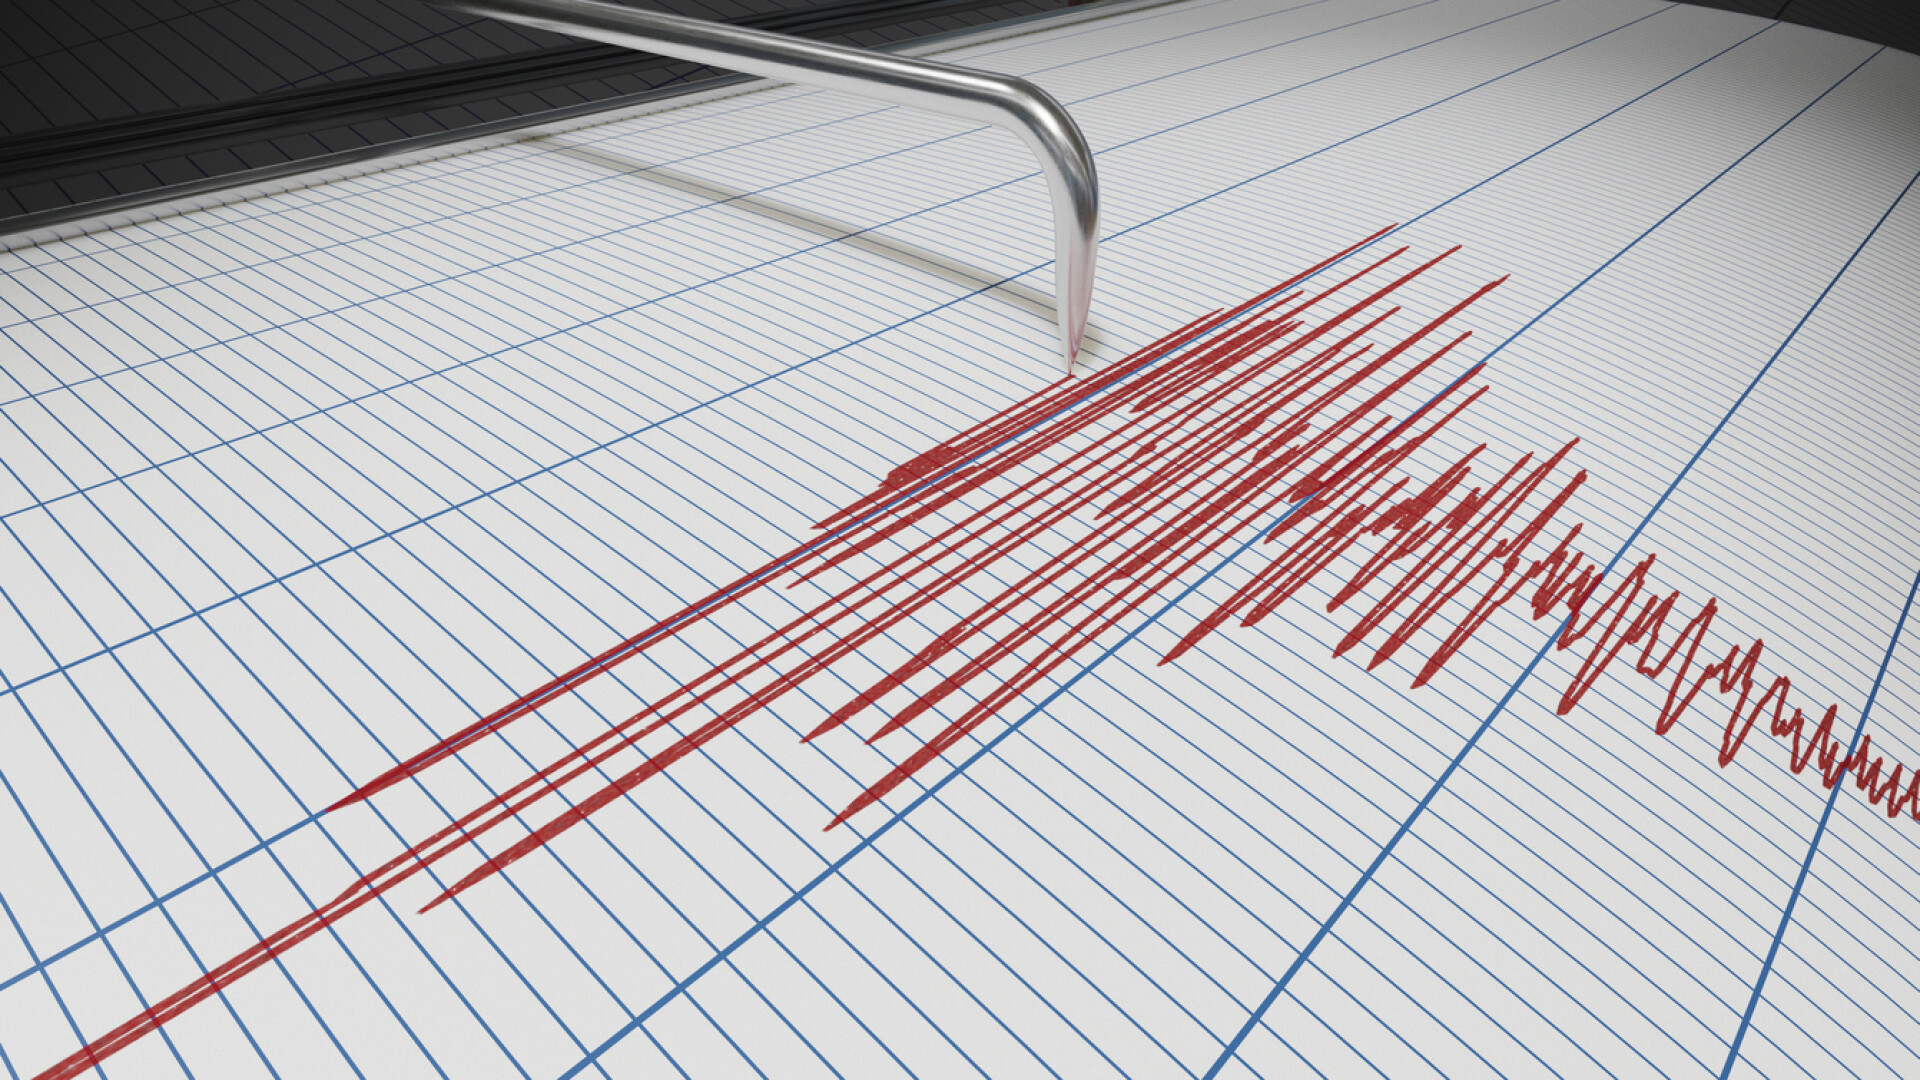 Un cutremur cu magnitudinea 8 s-a produs în Peru